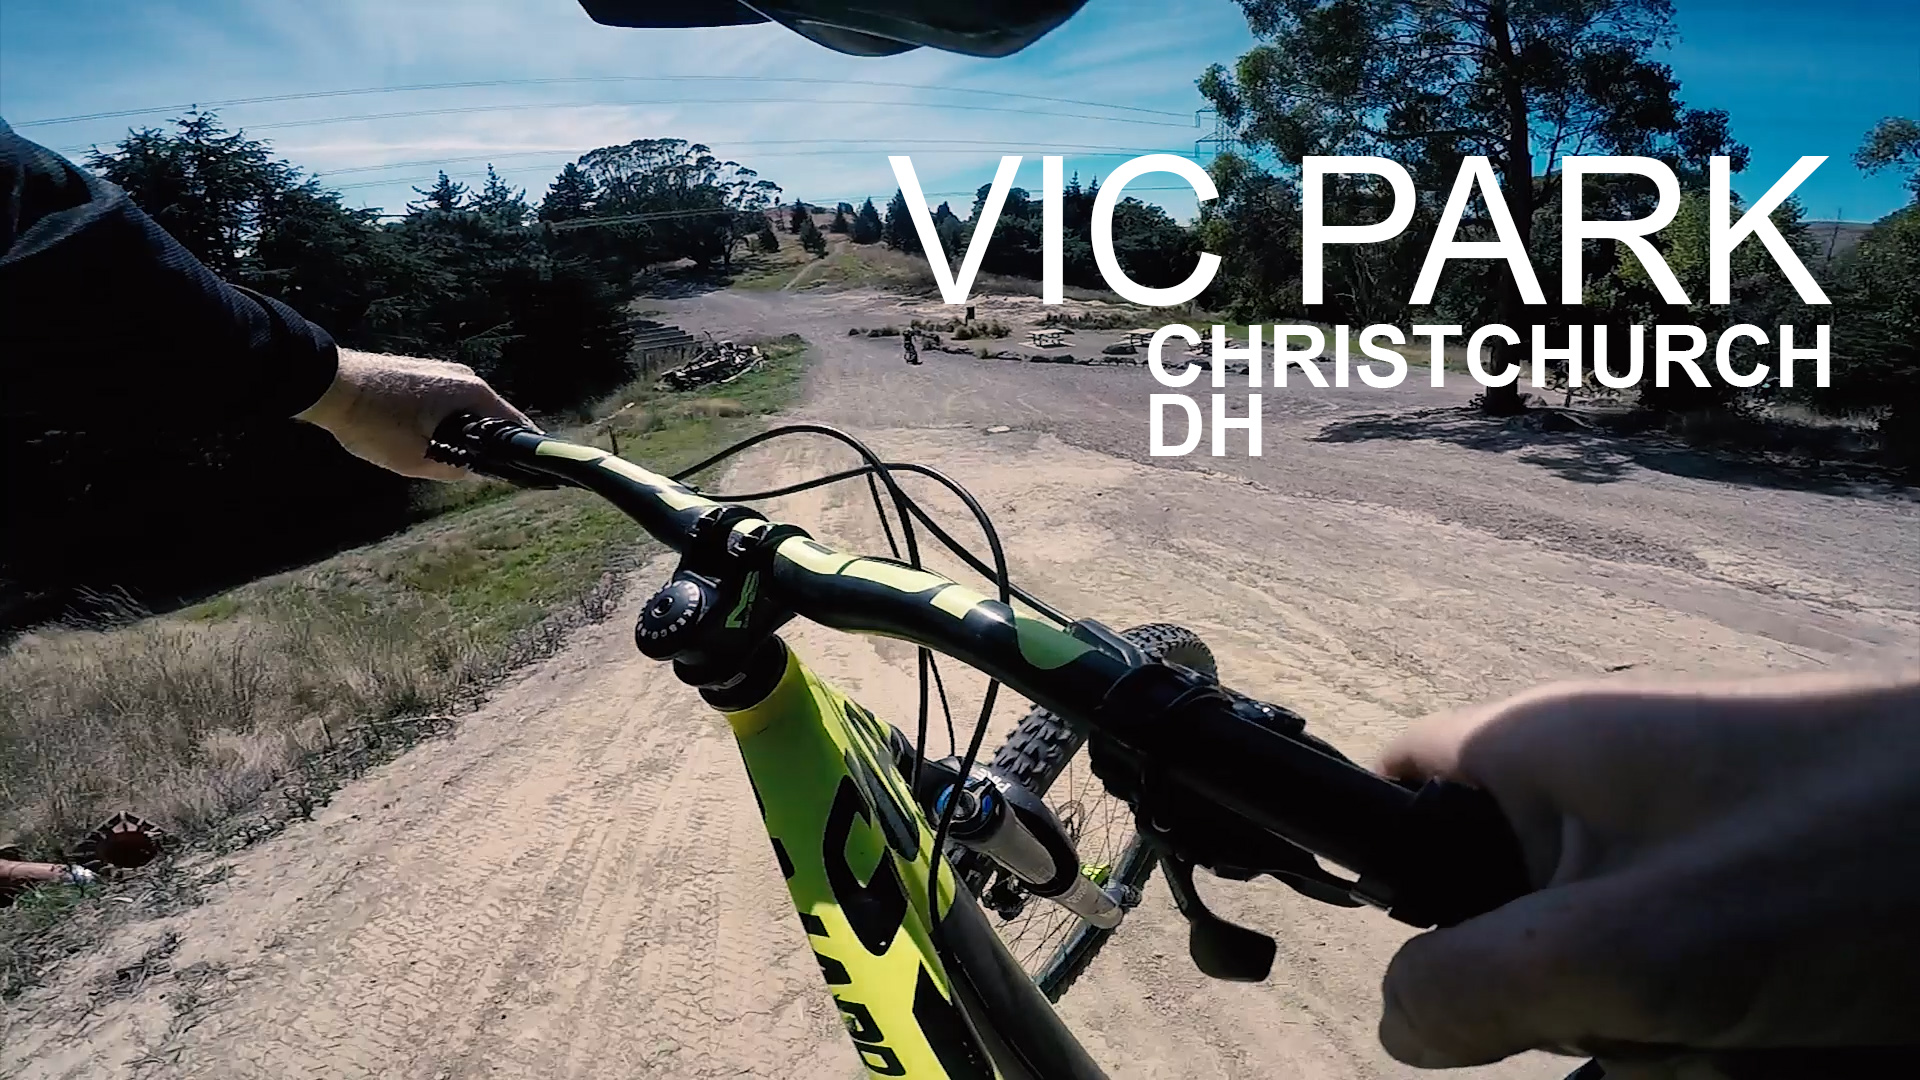 Victoria Park Highlights, Christchurch – New Zealand